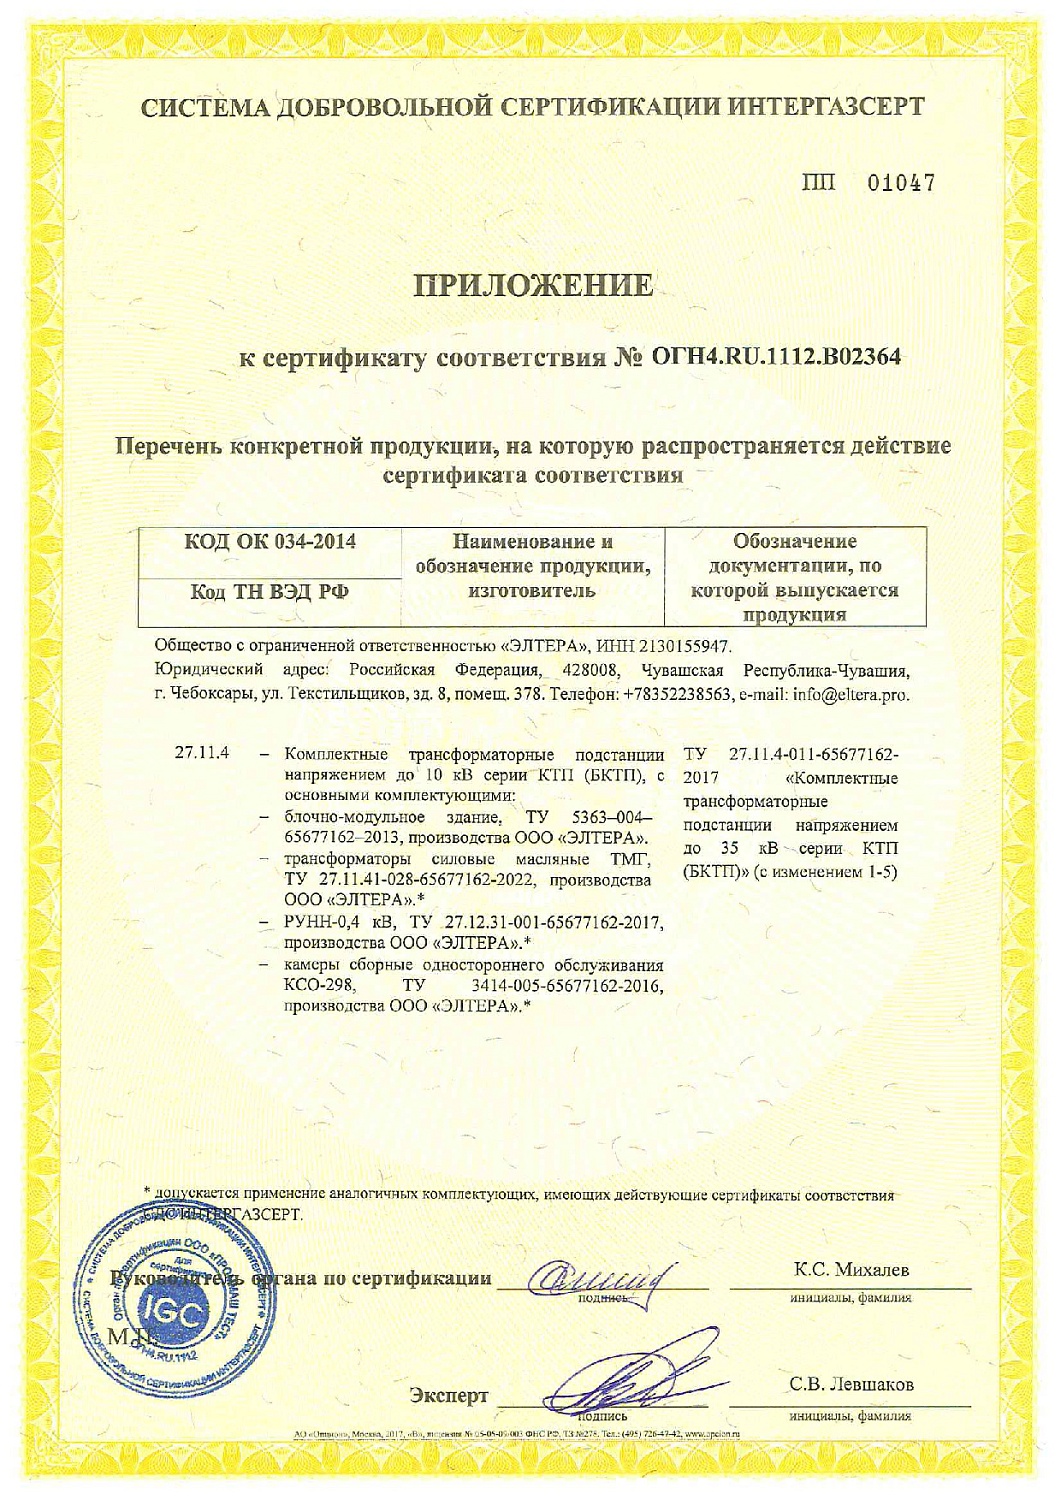 ООО «ЭЛТЕРА» получен сертификат соответствия КТП требованиям СДС ИНТЕРГАЗСЕРТ